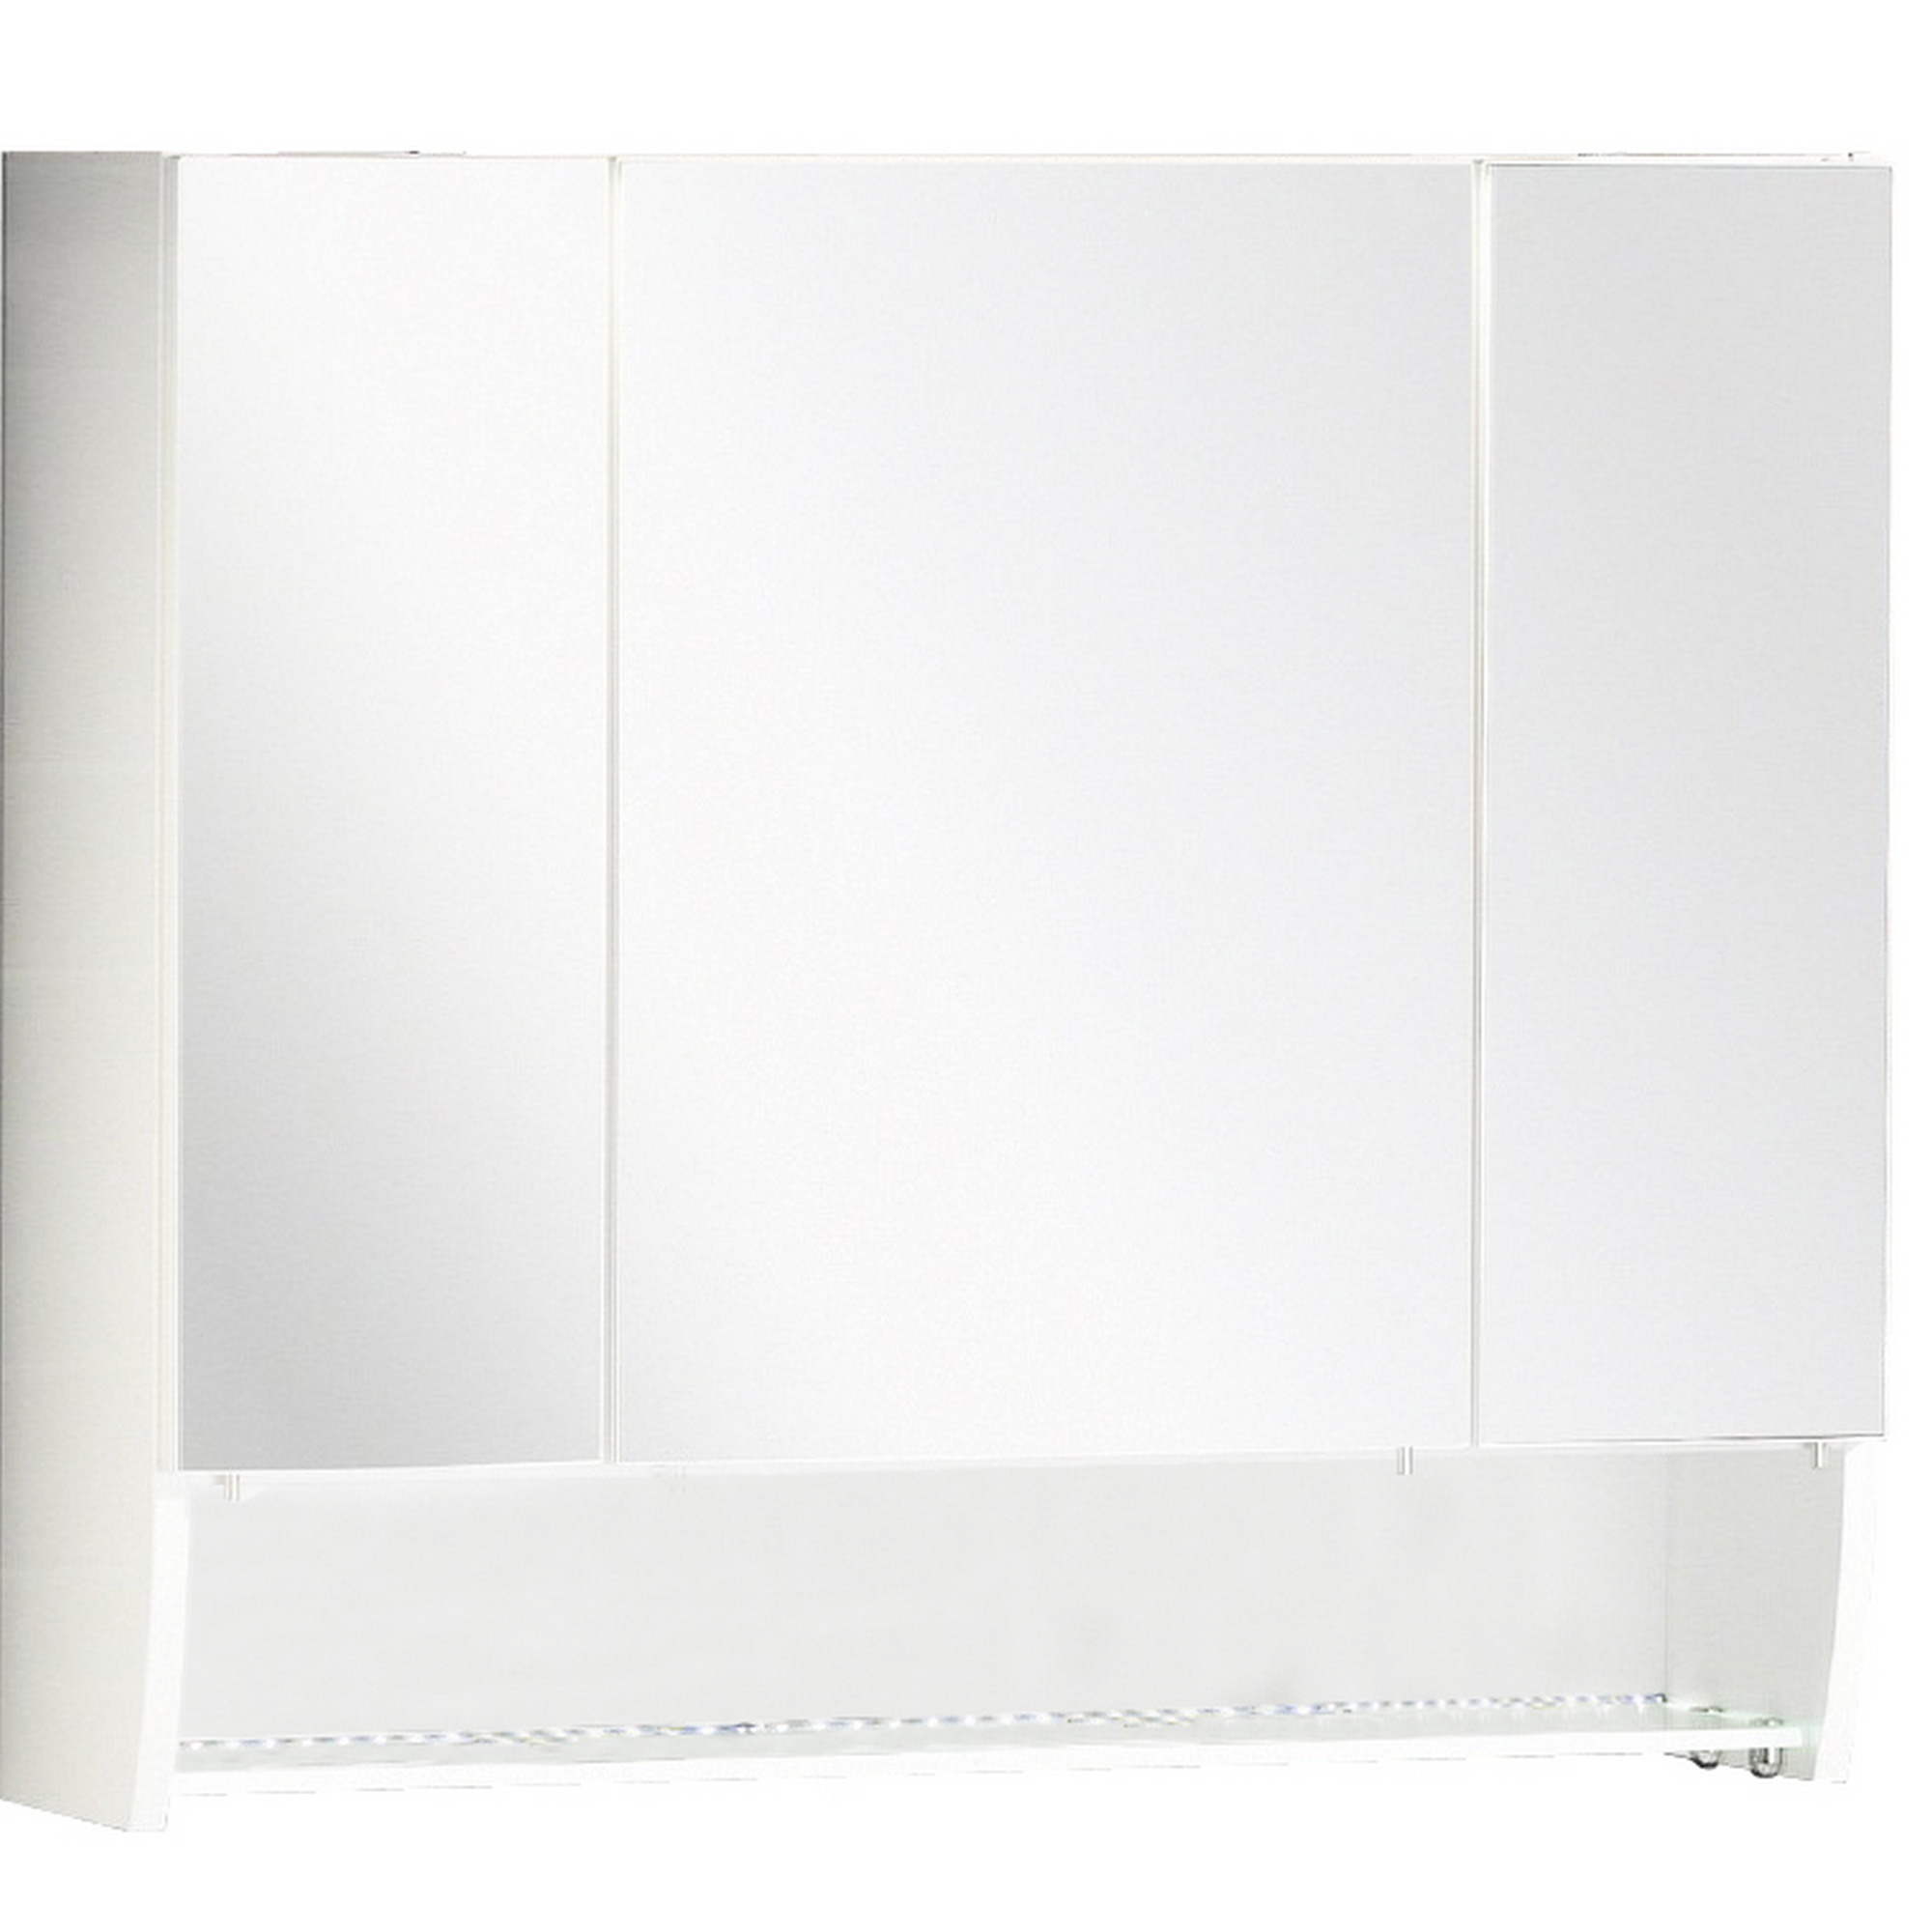 LED-Spiegelschrank 'Sceno' weiß glänzend 79,6 x 73 x 22,1 cm + product picture